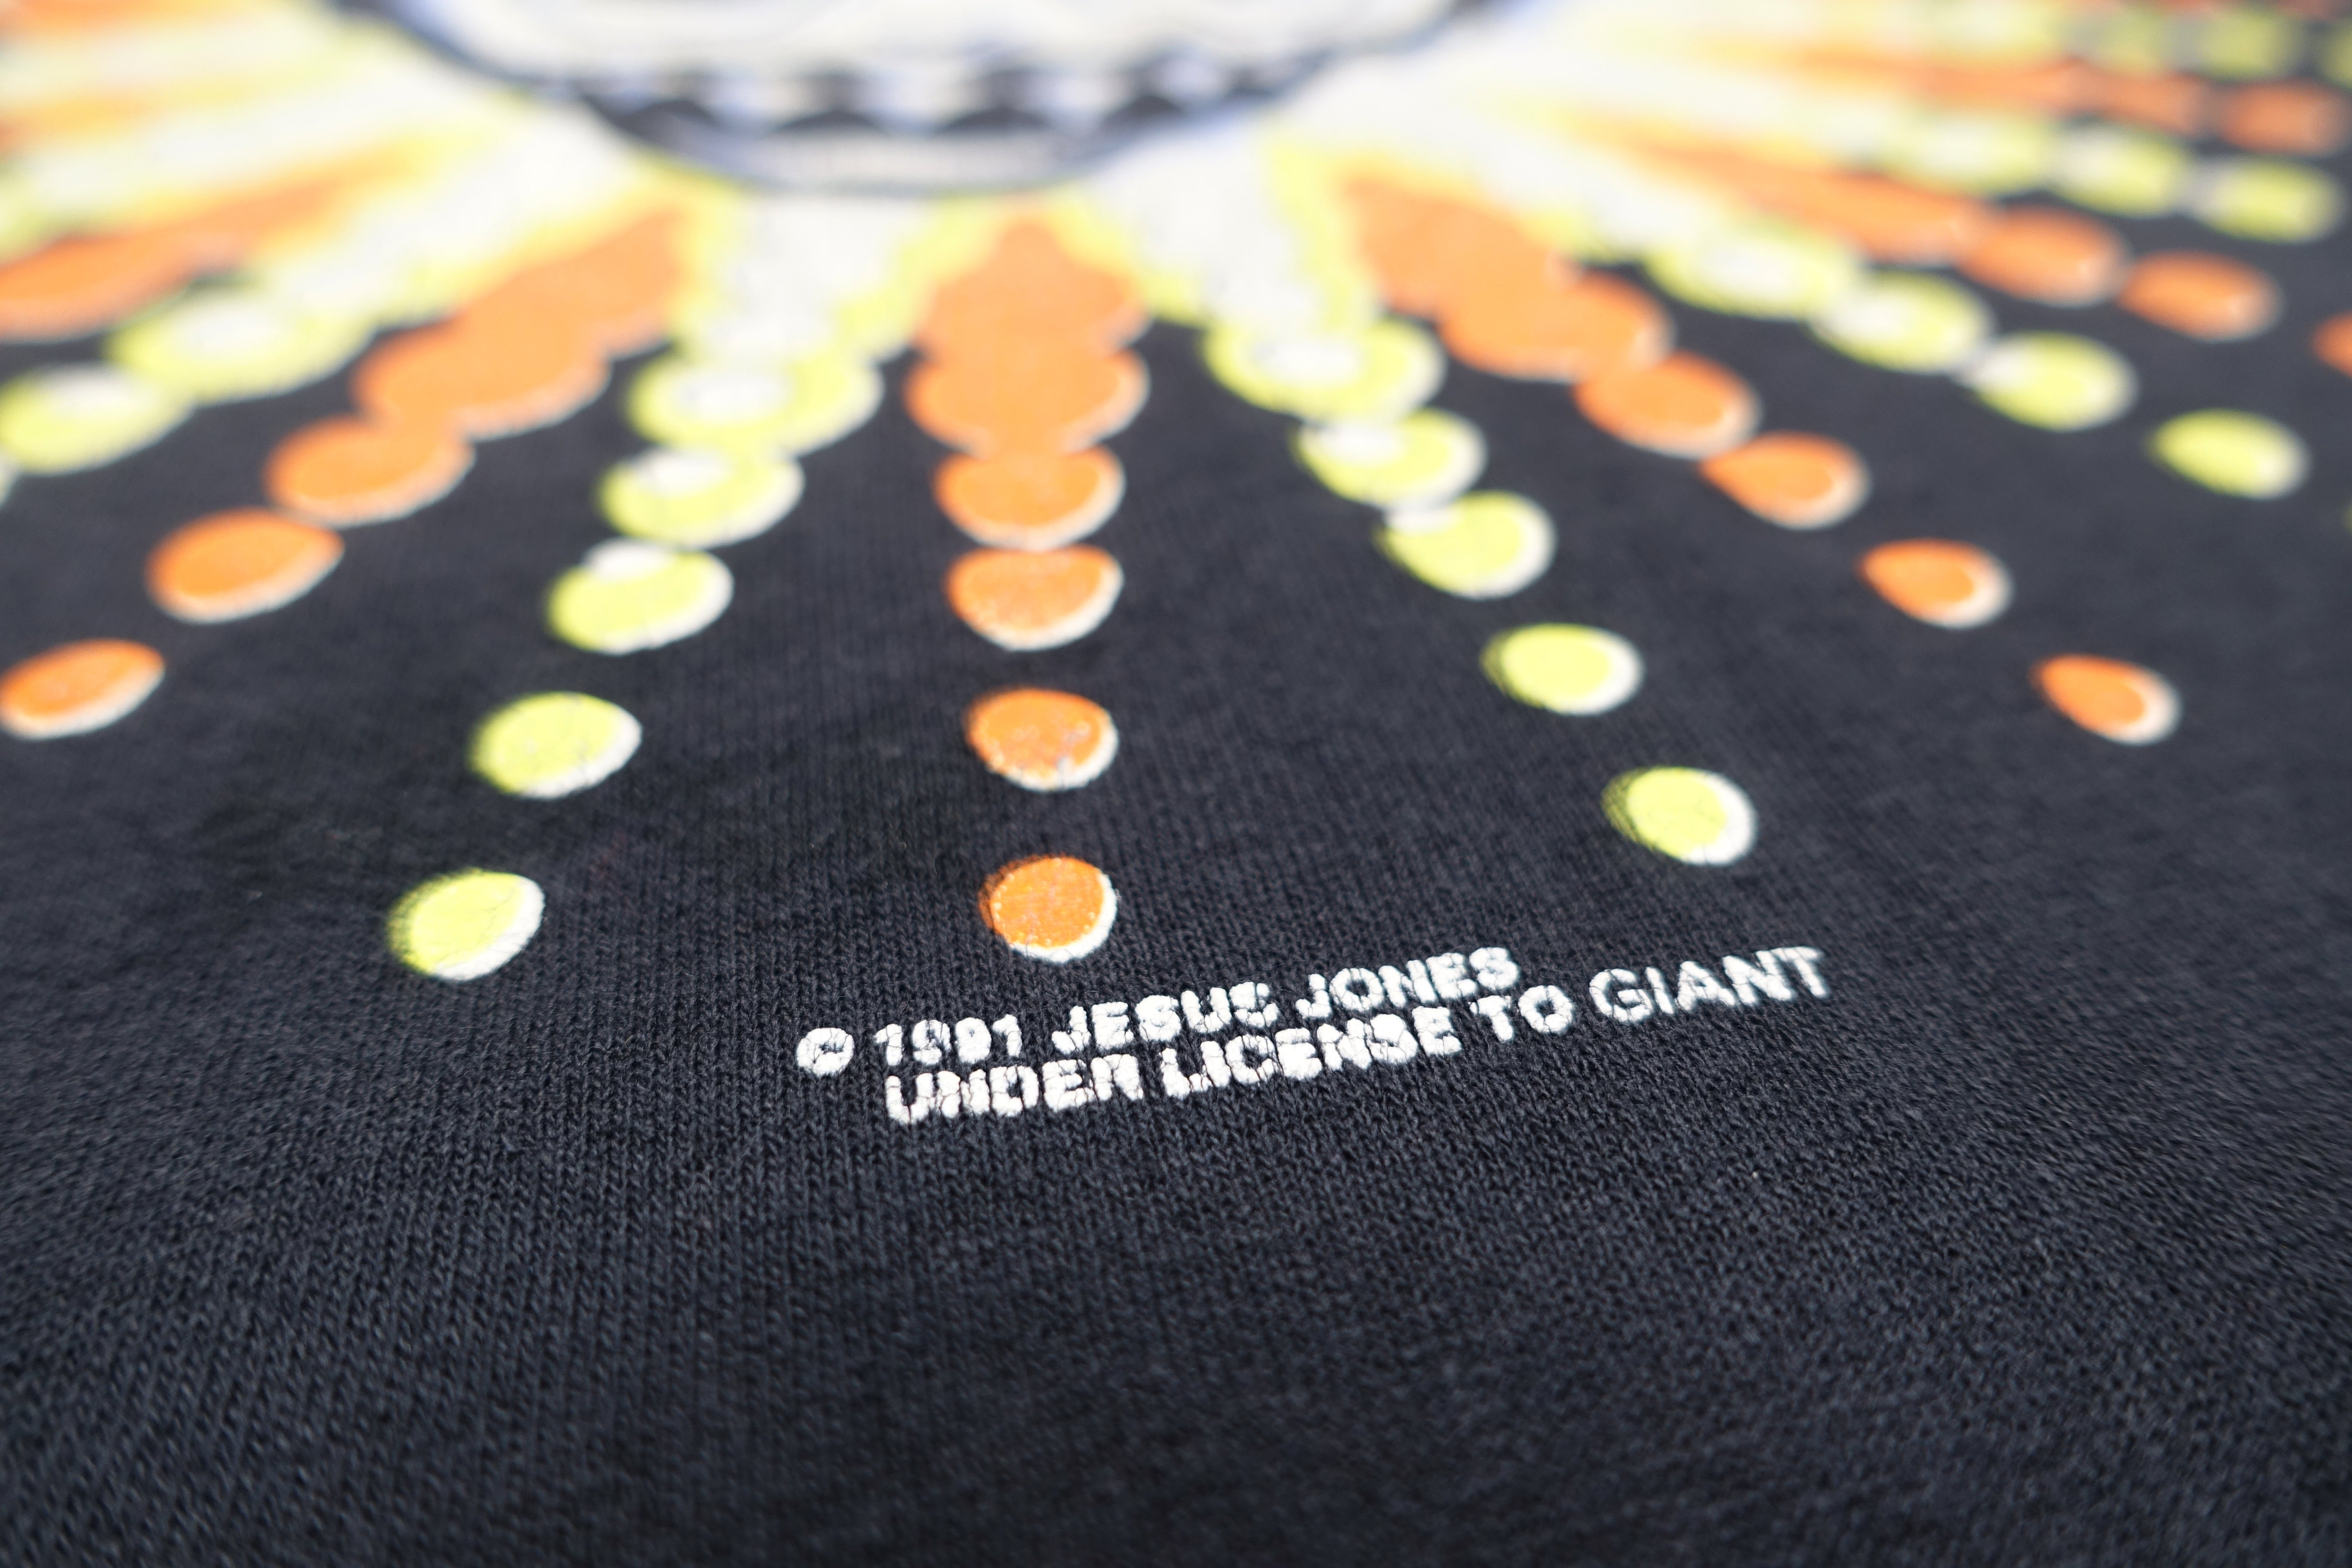 Jesus Jones – Doubt 1991 Tour Shirt Size XL